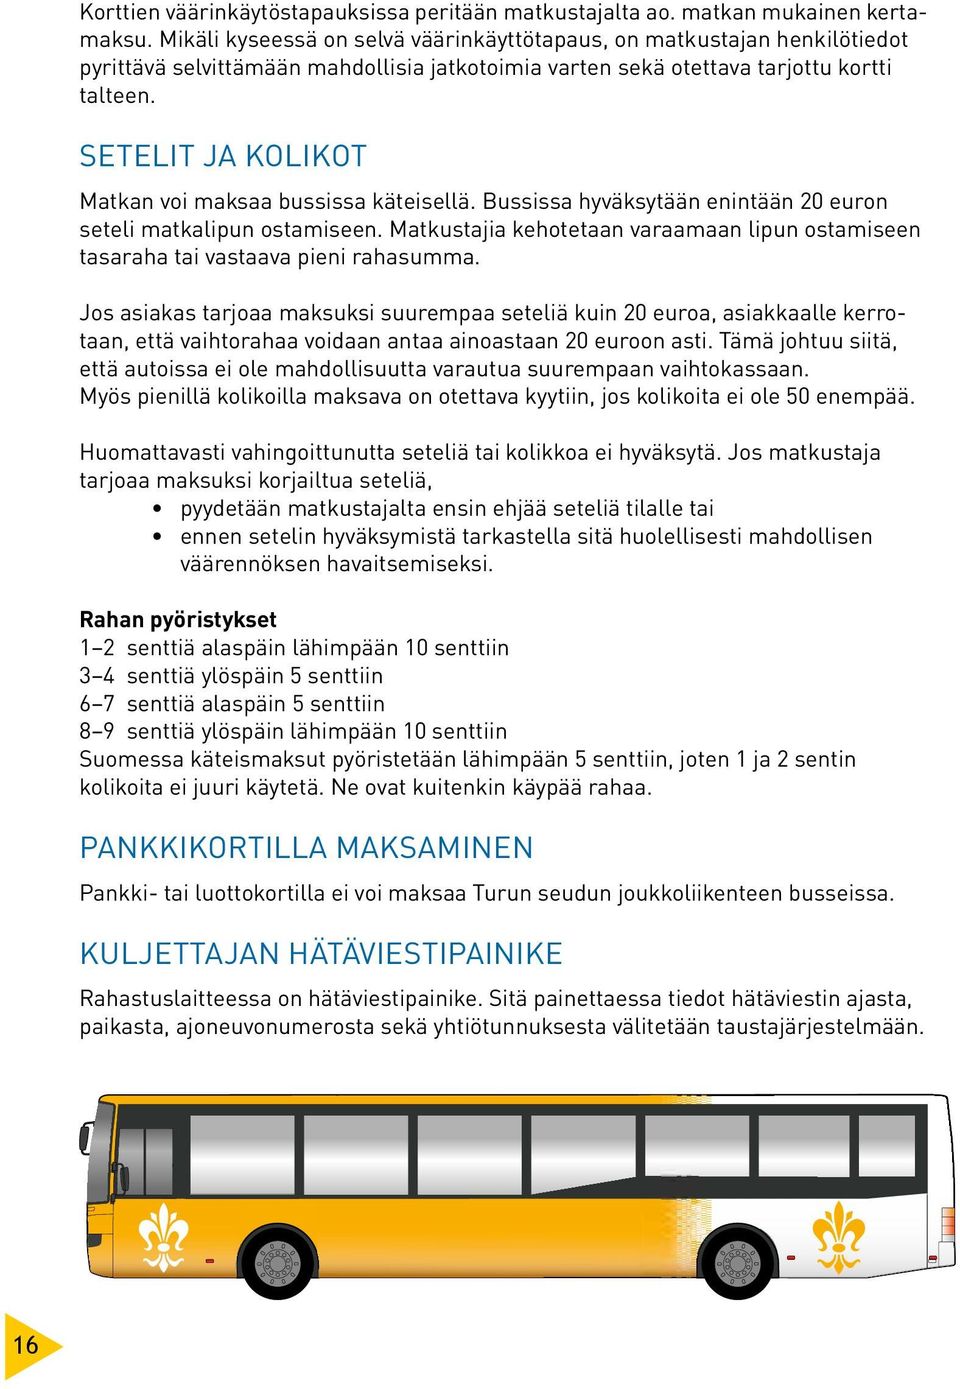 Setelit ja kolikot Matkan voi maksaa bussissa käteisellä. Bussissa hyväksytään enintään 20 euron seteli matkalipun ostamiseen.